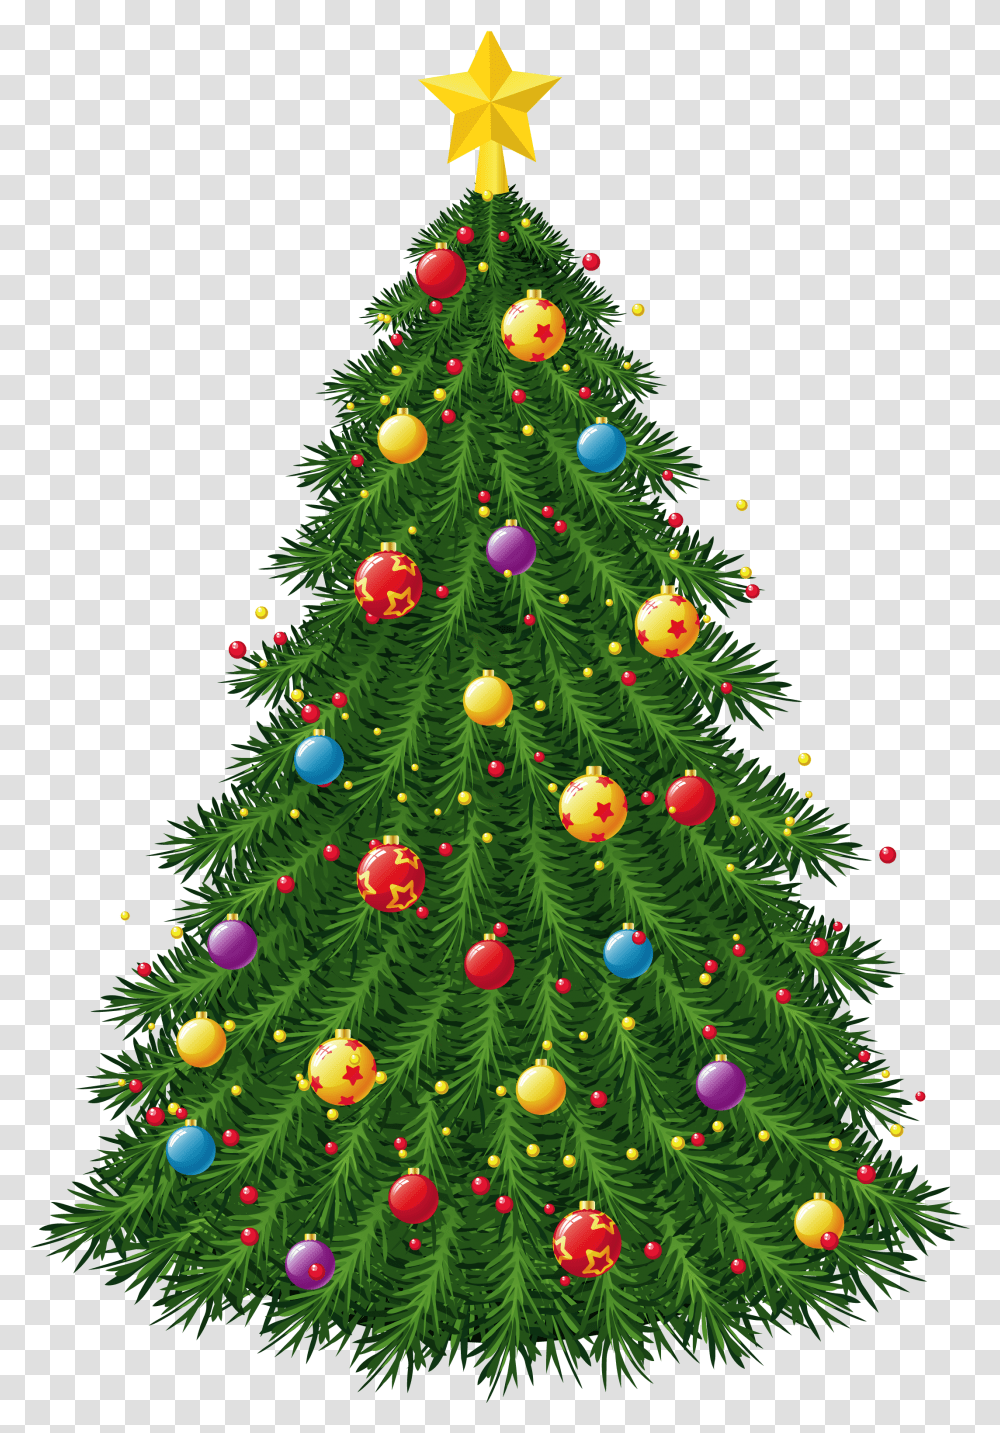 Arbre De Nol Christmas Tree Vector, Ornament, Plant, Lighting Transparent Png